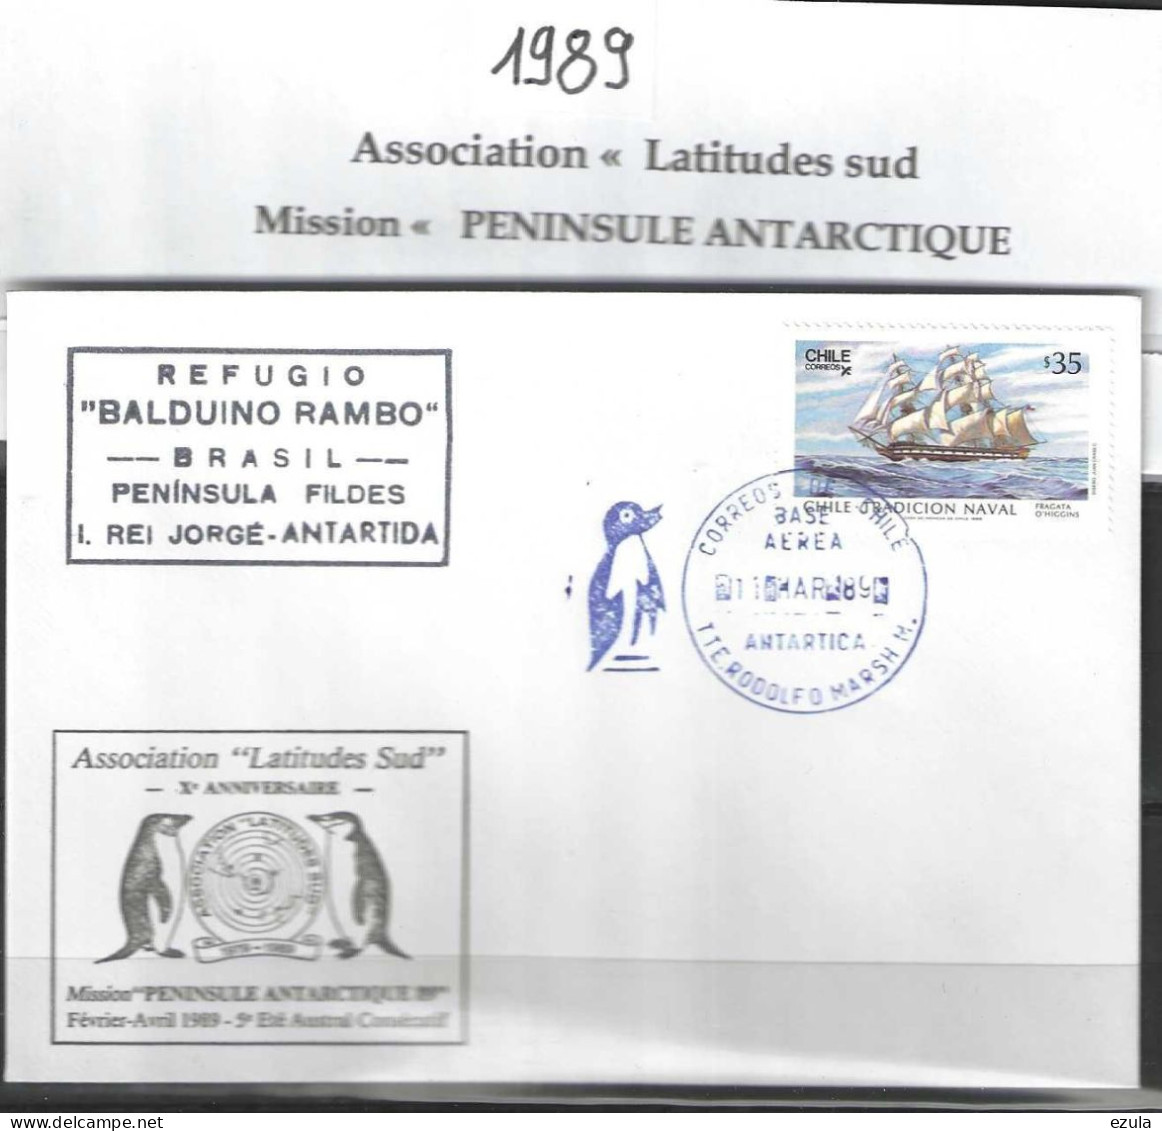 Chilie -Association Latitude Sud  Mission Peninsule Antartique 89 - Année Polaire Internationale